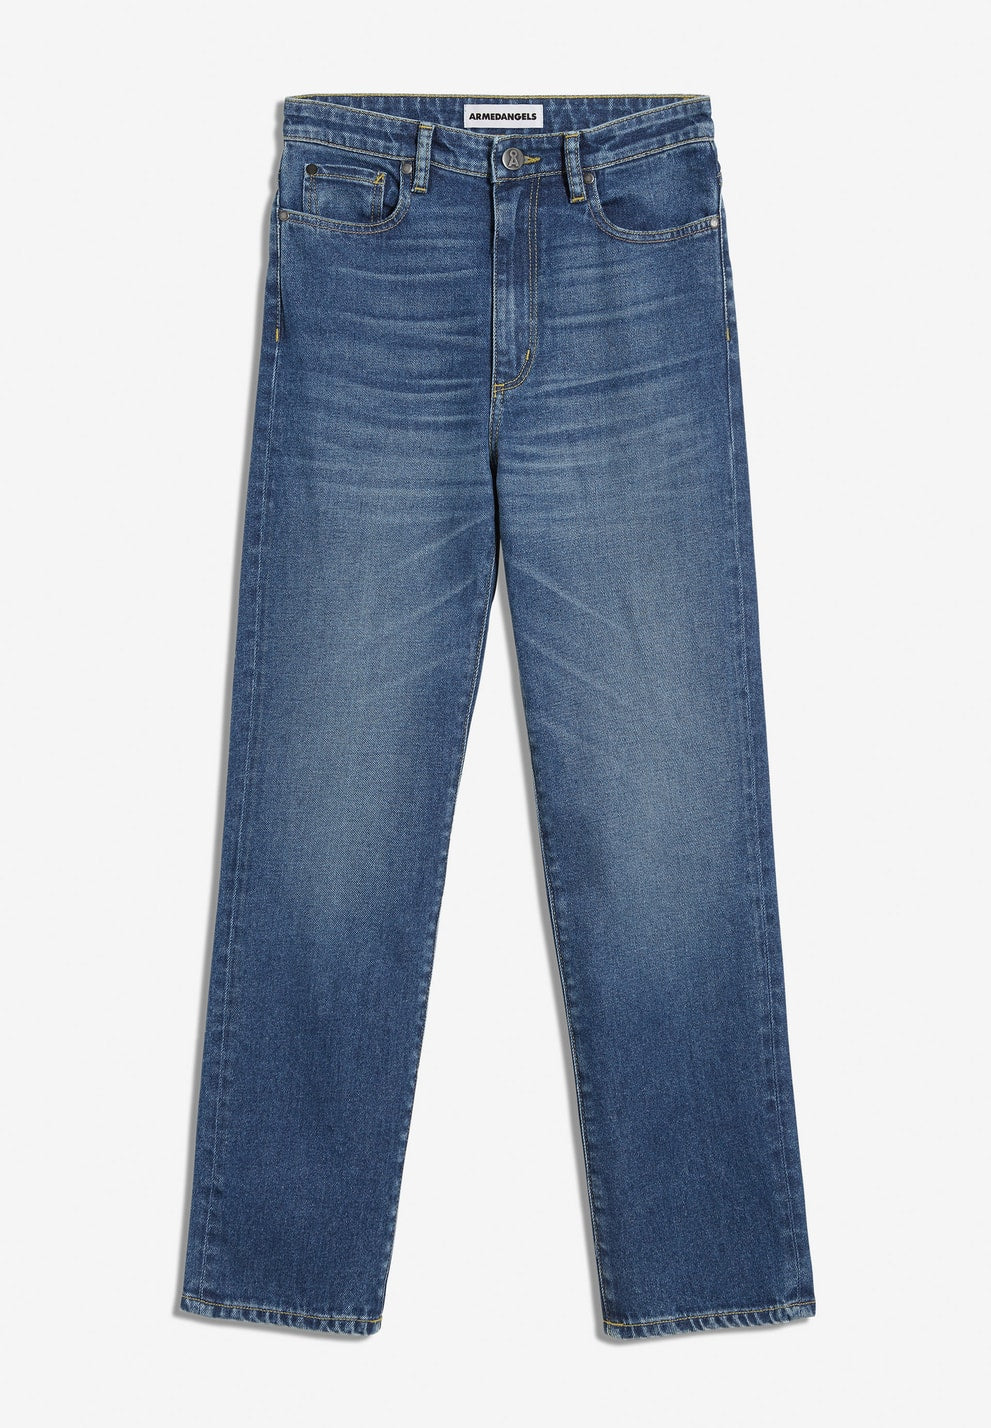 Jeans LEJAANI slim fit dark  | ARMEDANGELS